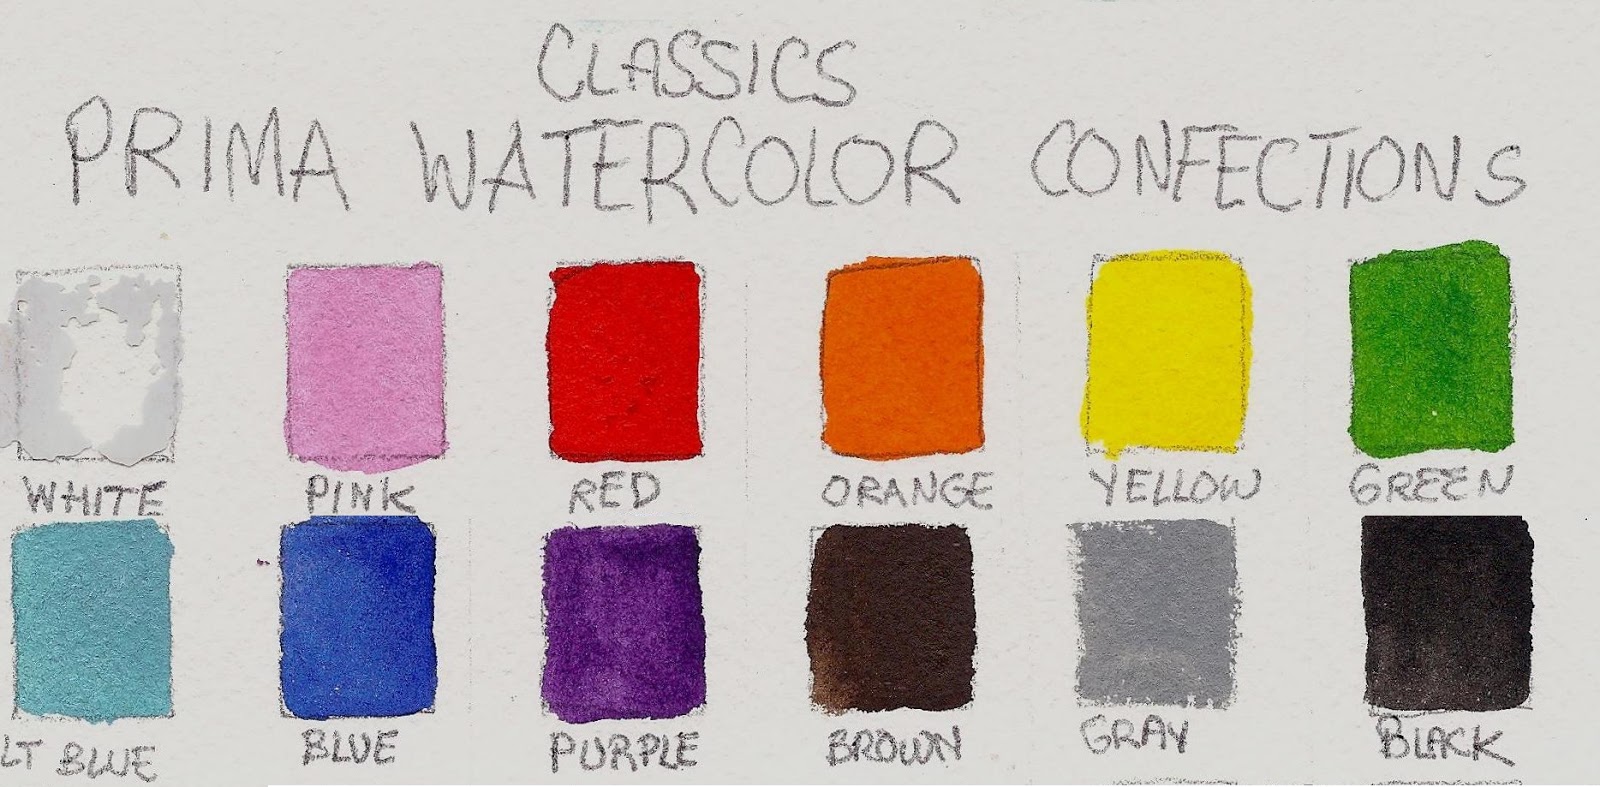 Watercolor Coloring Book! Prima Watercolor Confections 